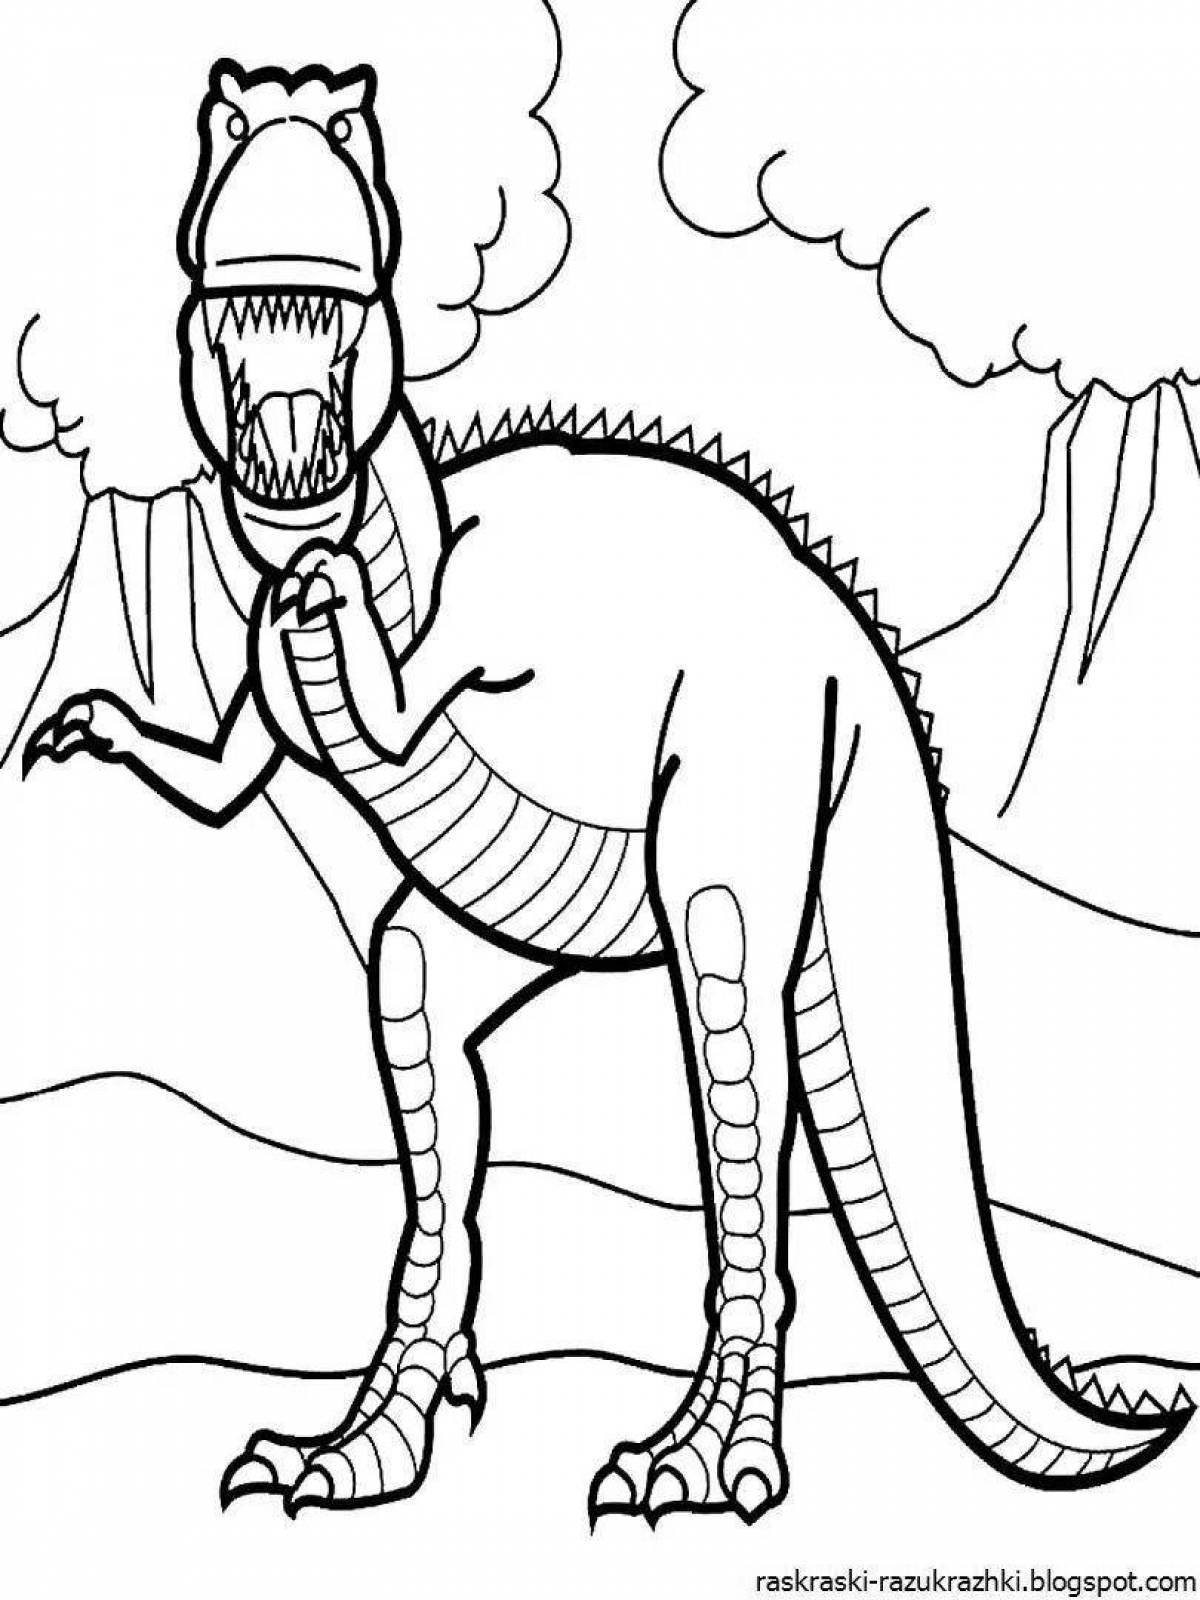 Раскраски динозавры формат а4. Динозавры / раскраска. Раскраски для мальчиков динозавры. Картинки динозавров для раскрашивания. Динозавр раскраска для детей.